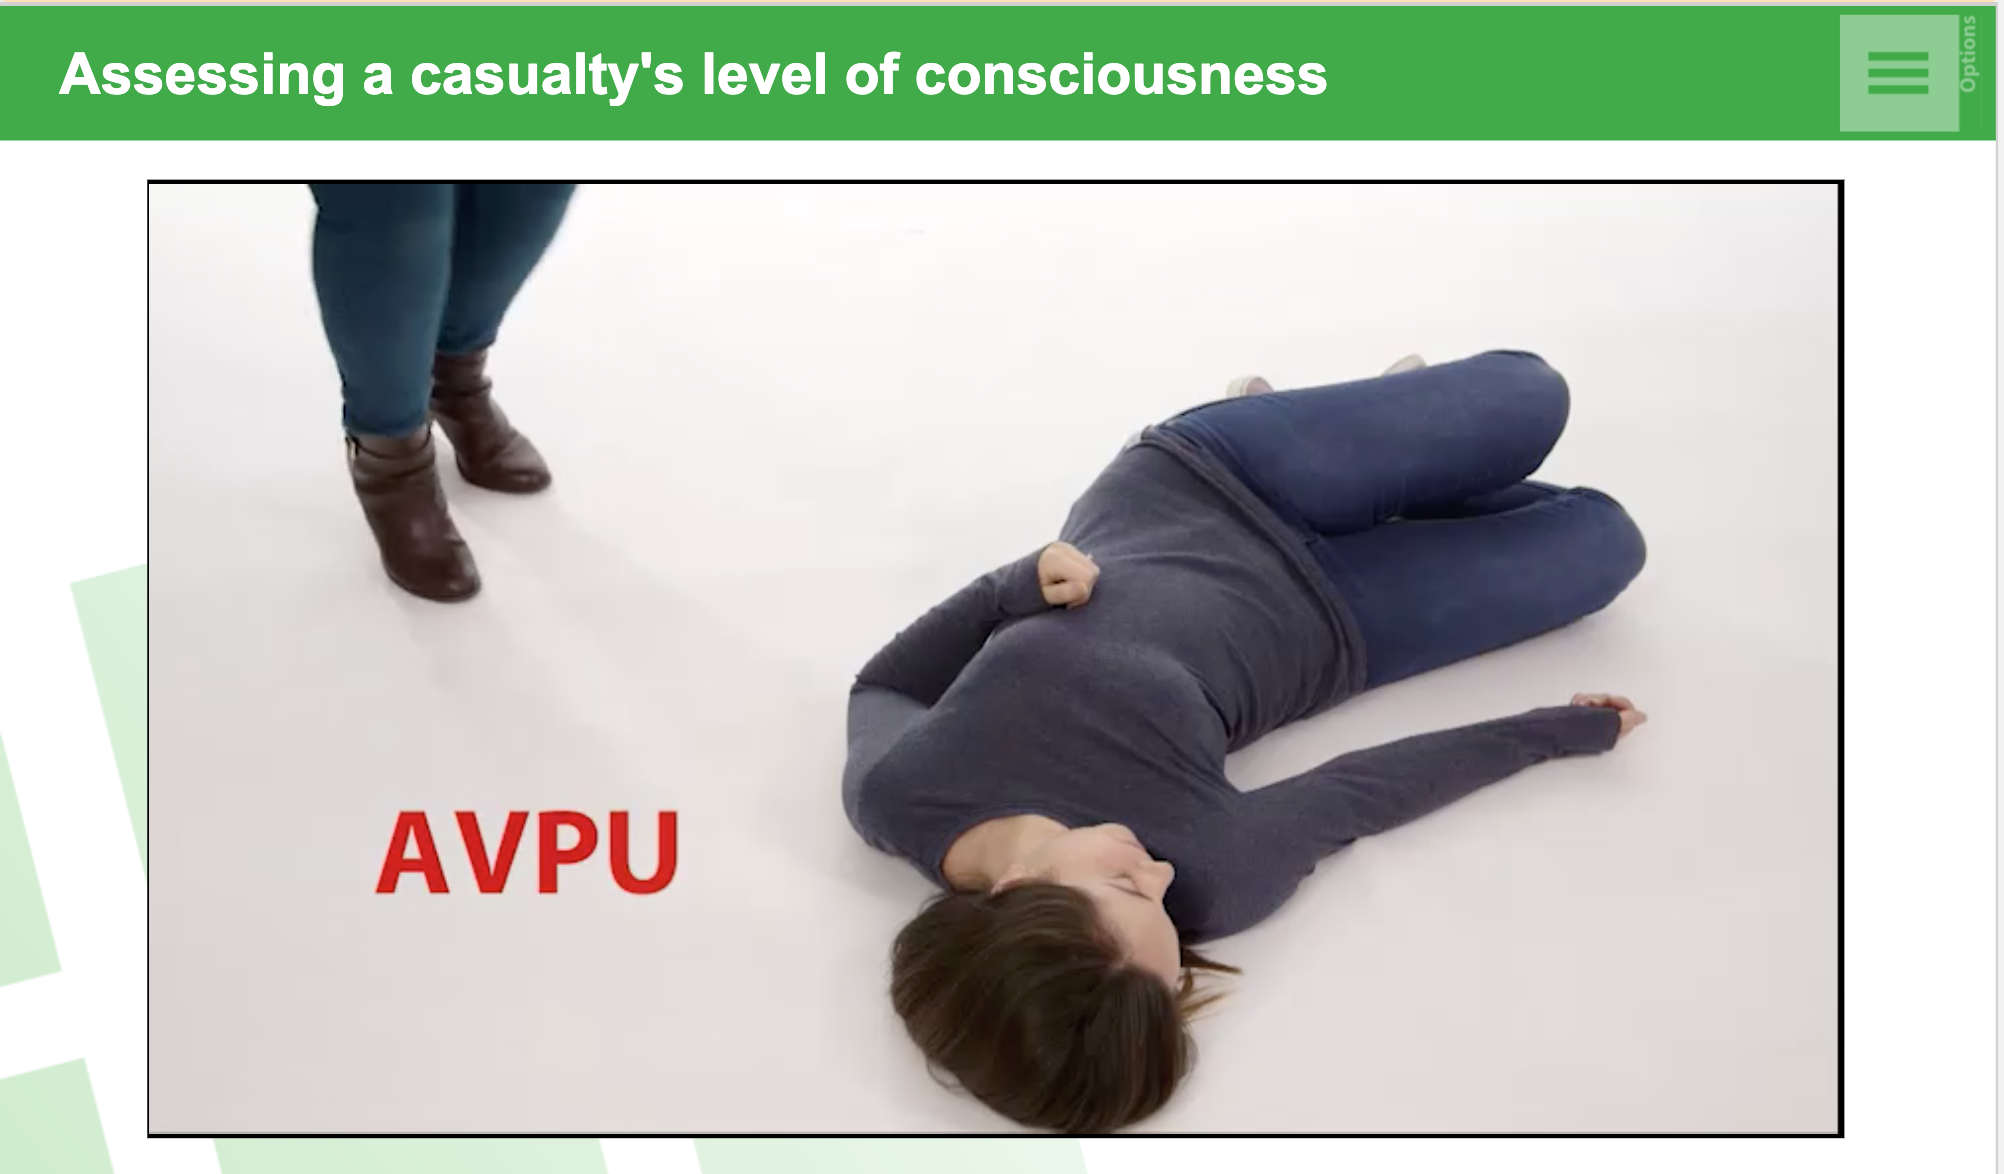 Assessing conciousness